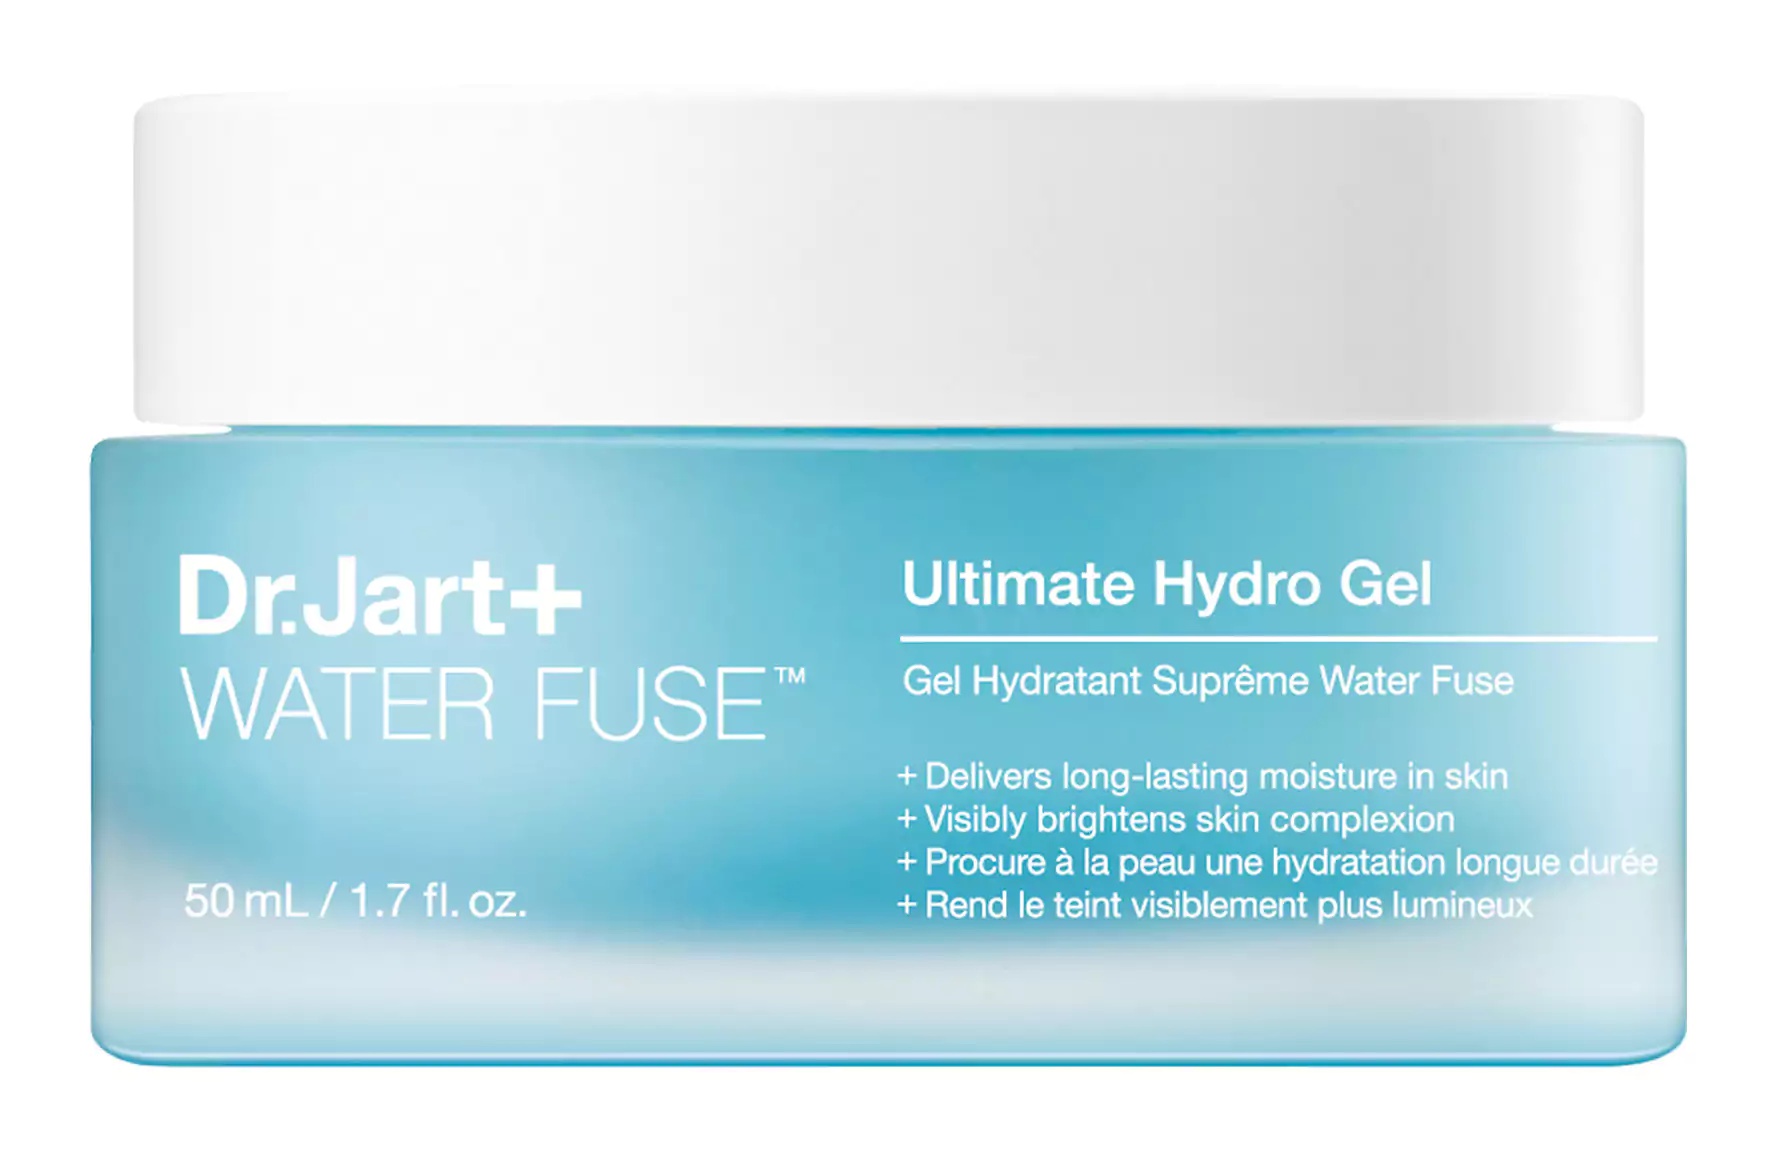 Dr. Jart+ Water Fuse Ultimate Hydro Gel